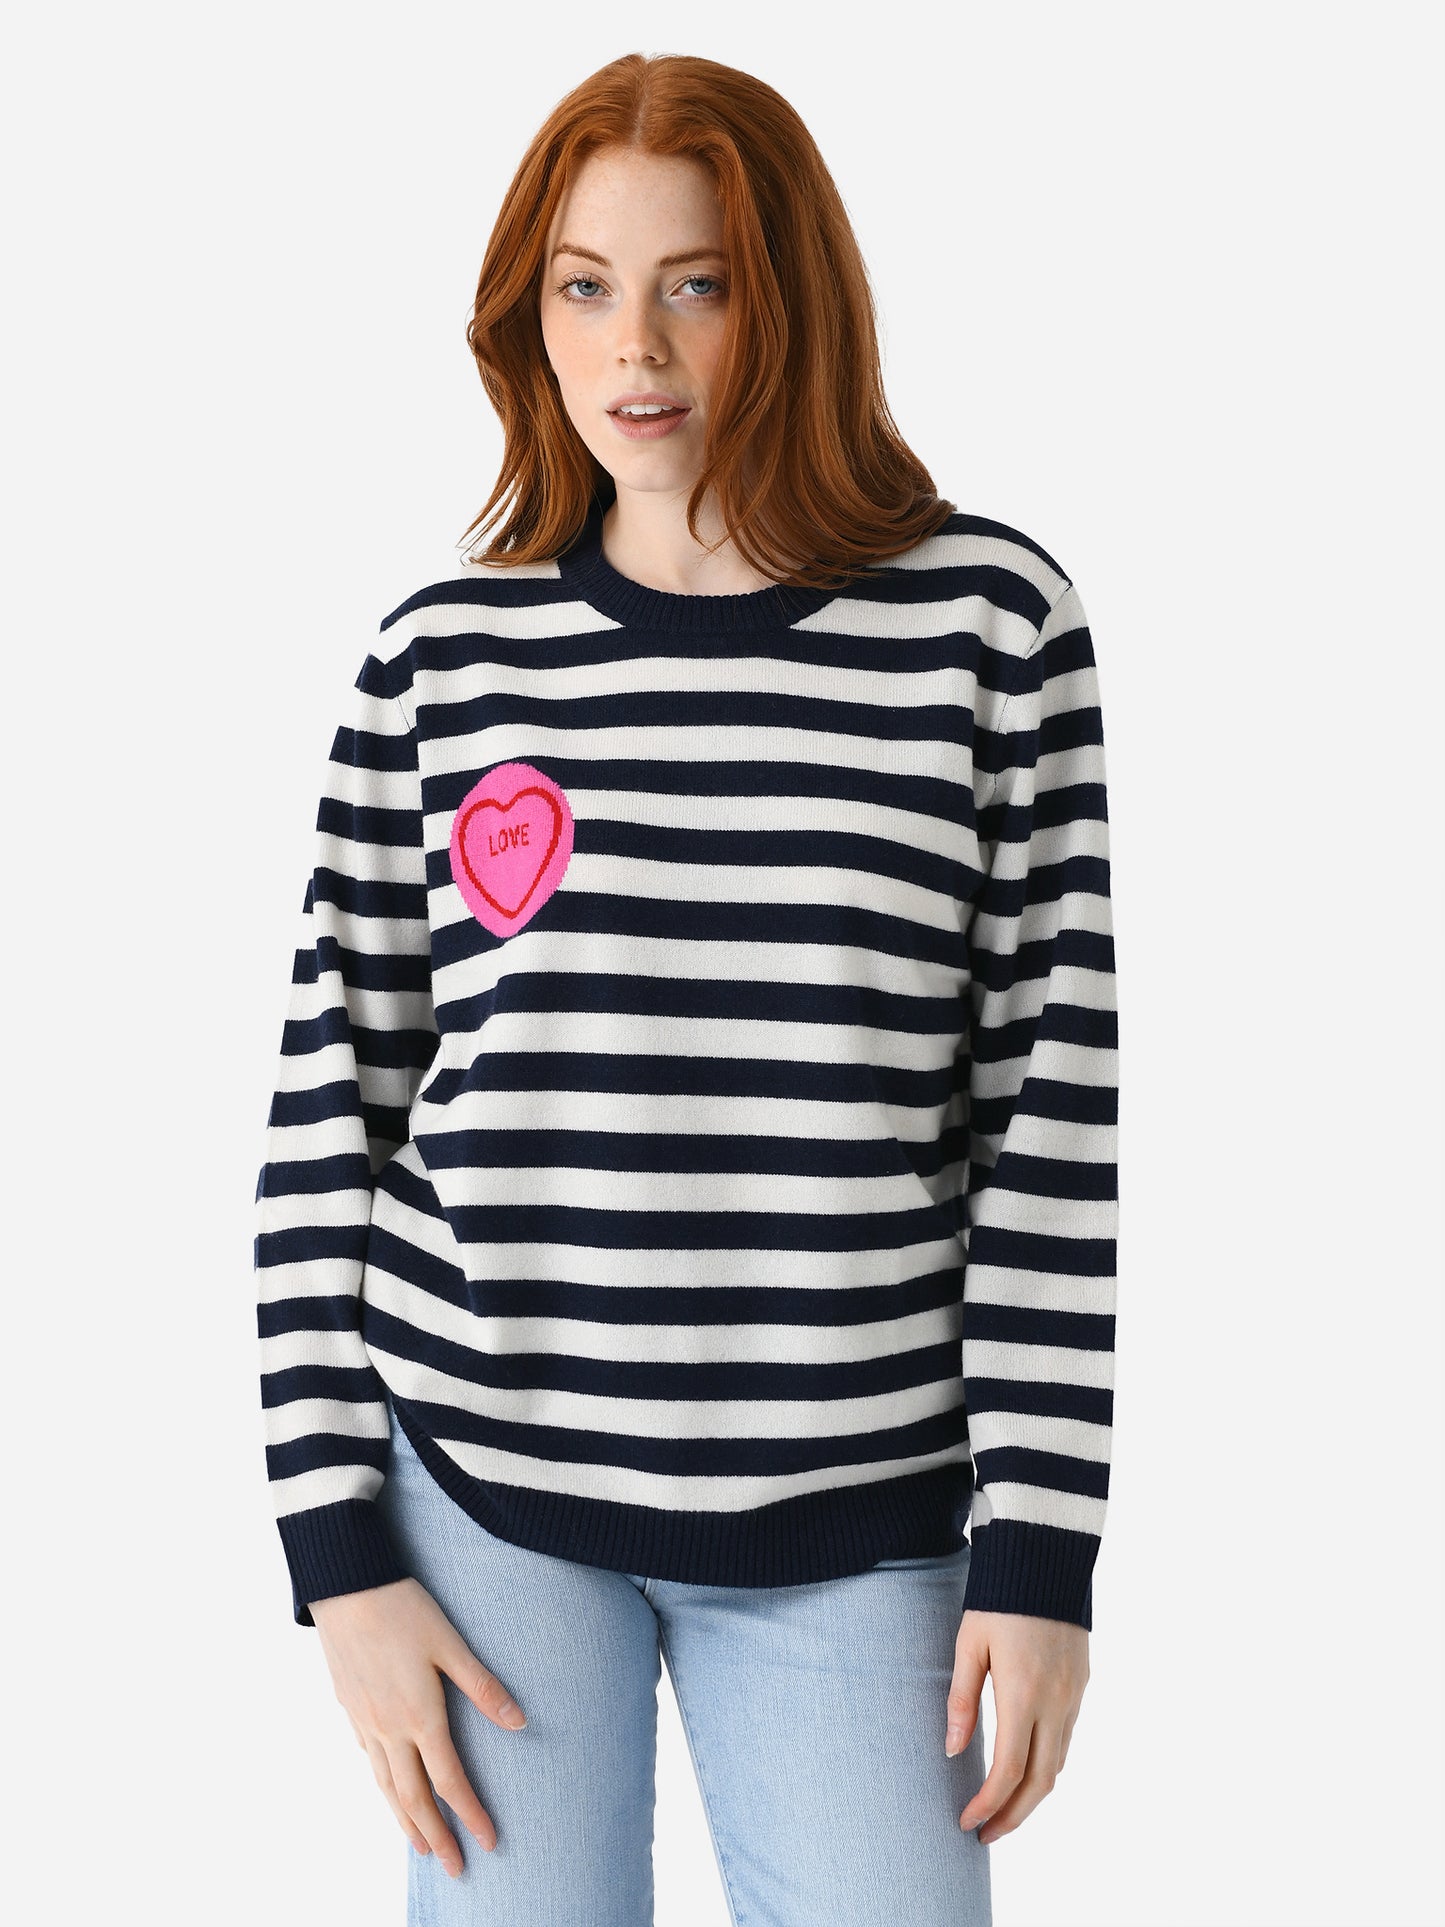 Jumper 1234 Women's Stripe Love Crew Sweater